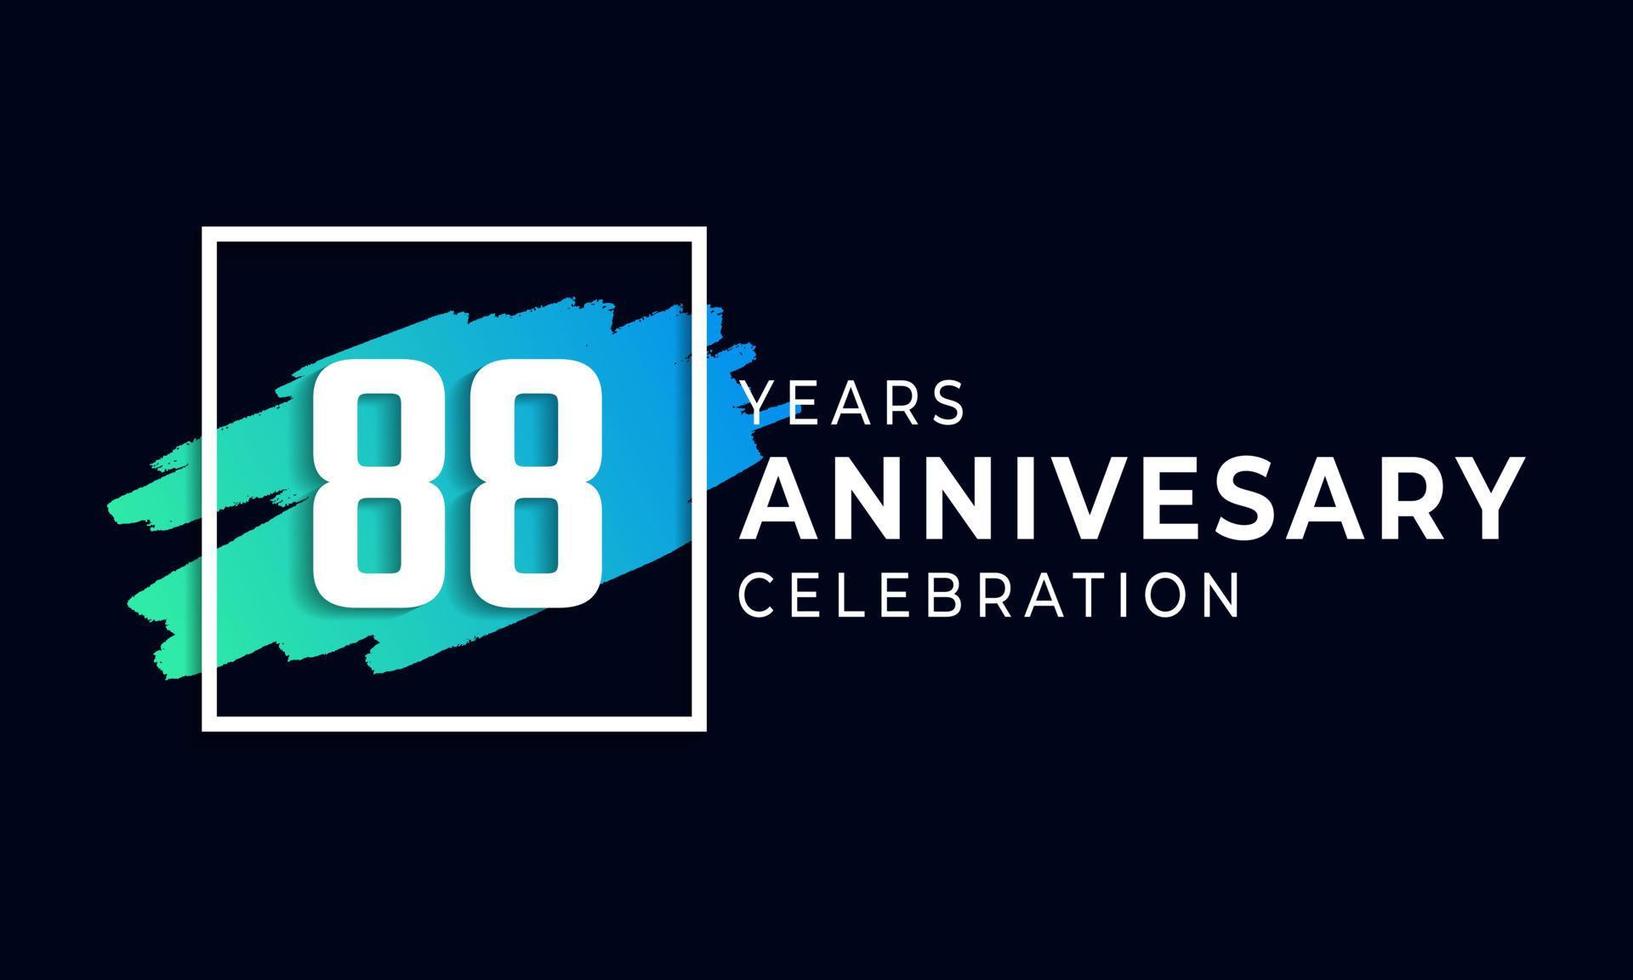 88-jarig jubileumfeest met blauwe borstel en vierkant symbool. gelukkige verjaardag groet viert gebeurtenis geïsoleerd op zwarte achtergrond vector